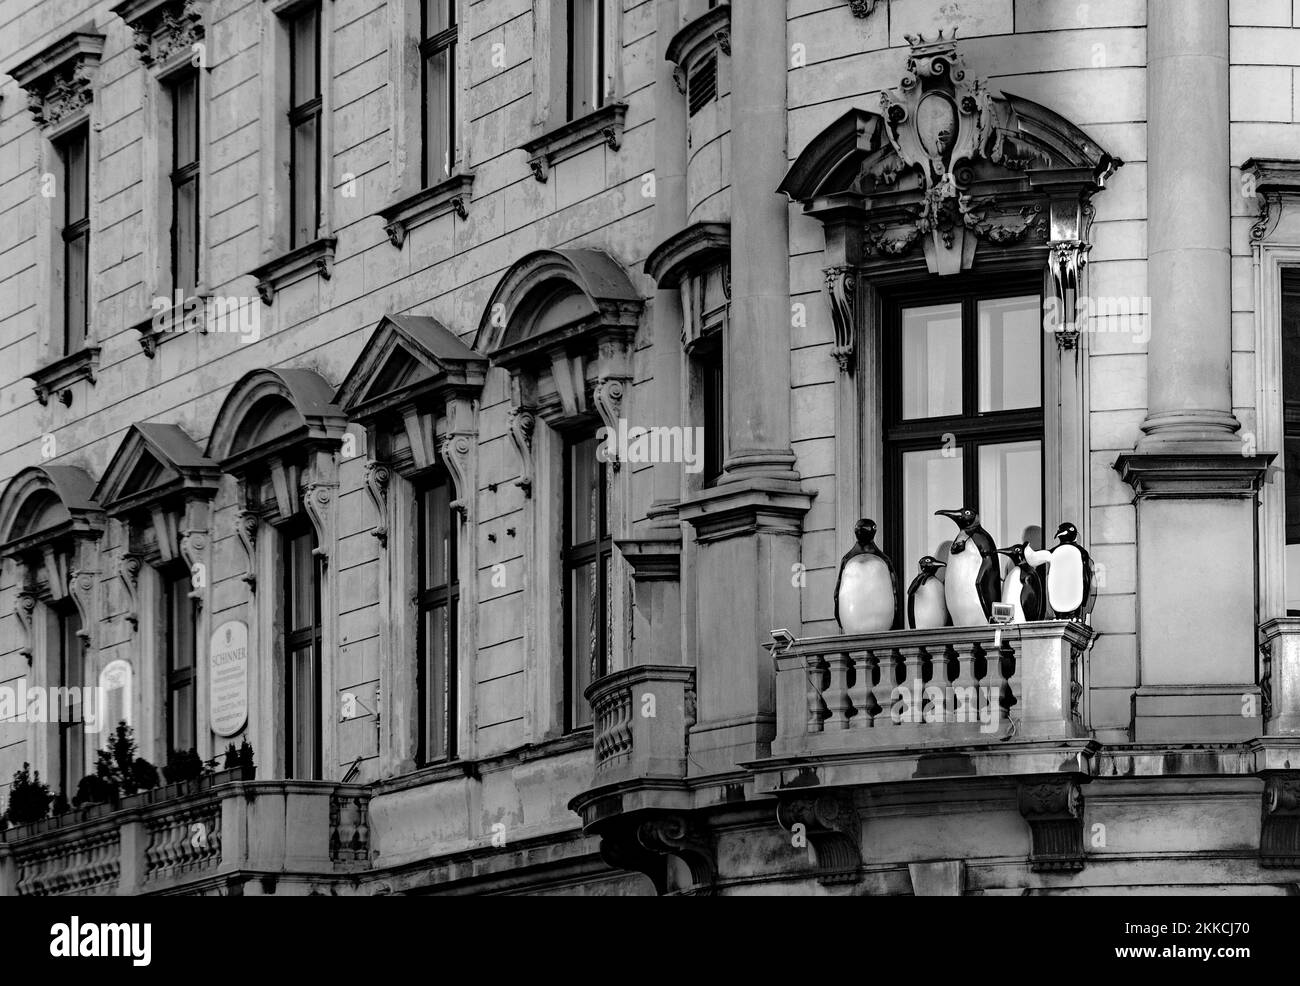 WIEN, ÖSTERREICH - 16. FEB 2019: pinguinpuppen auf einem alten Balkon blicken auf die Straße in Wien. Stockfoto